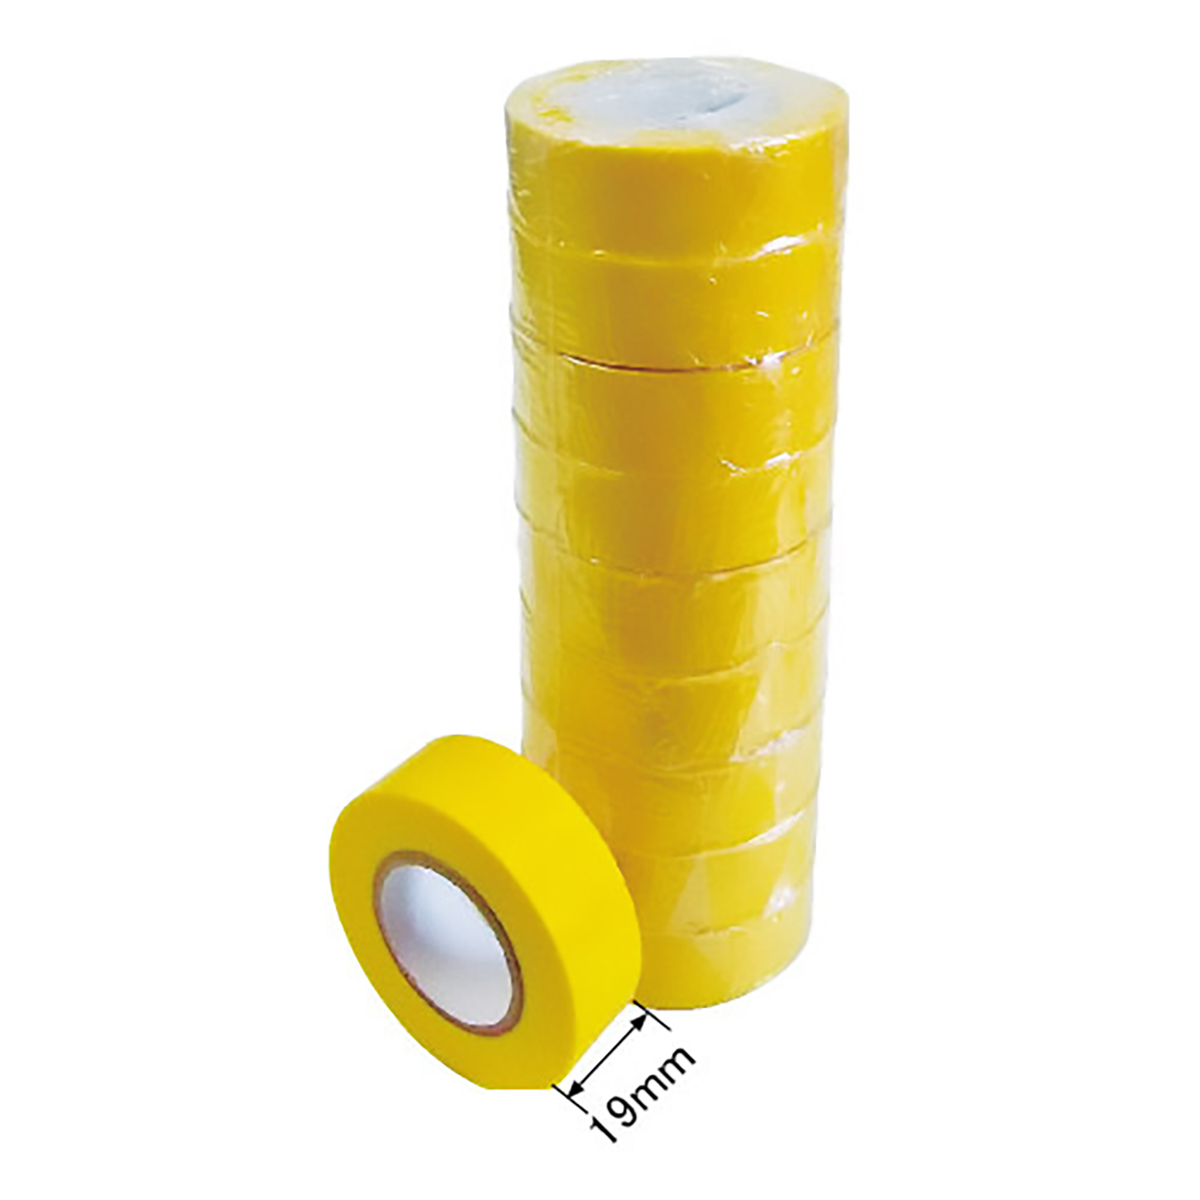 ビニールテープ JIS-C2336適合品 黄色 10巻セット